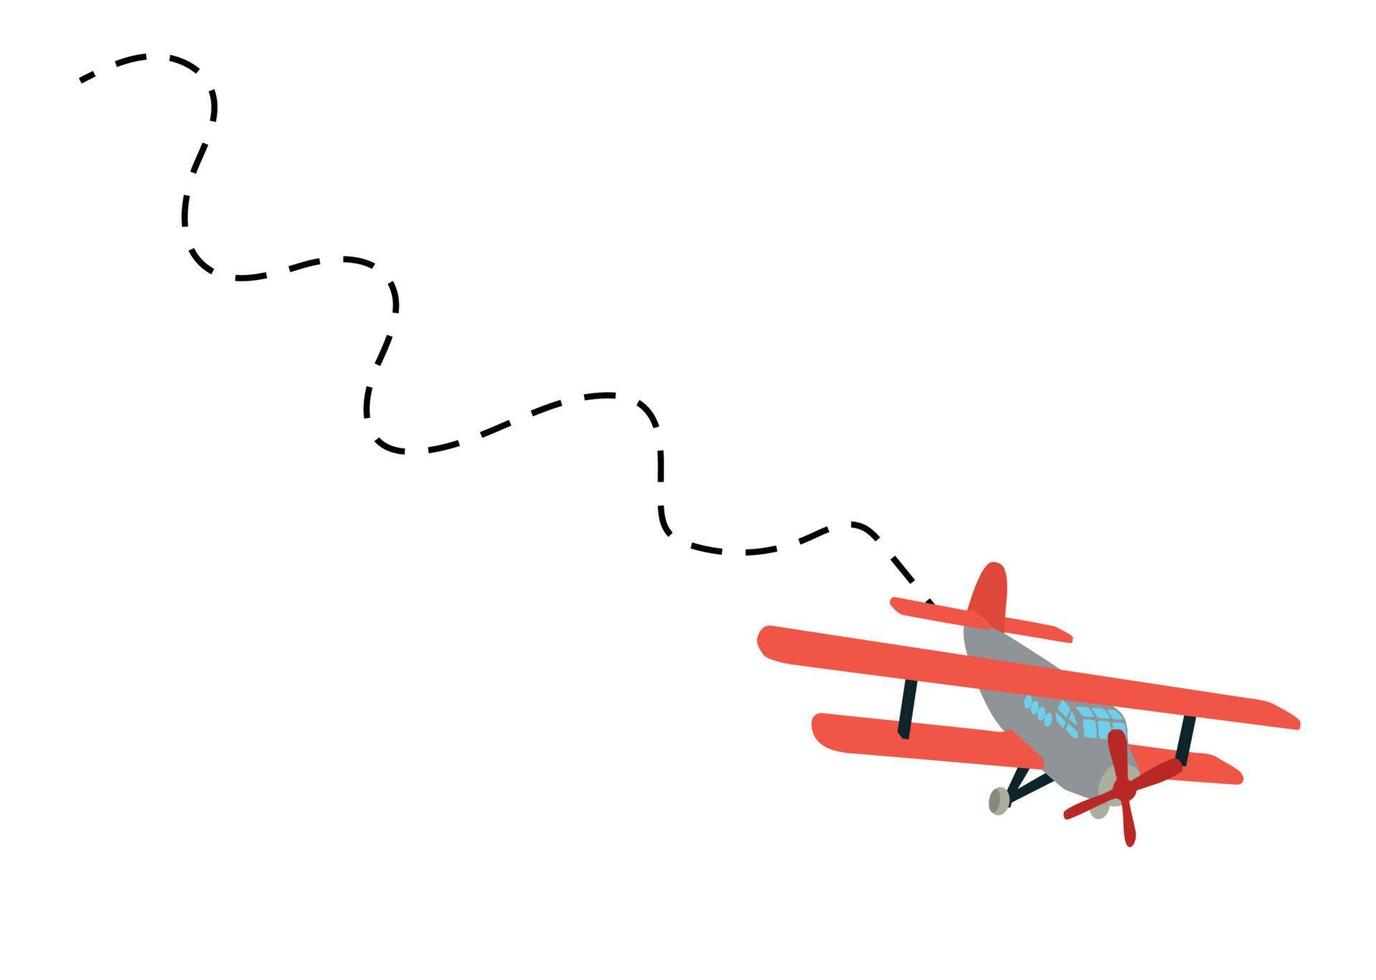 kleurenmodel van een oud vliegtuig met vluchtspoor. geïsoleerd op een witte achtergrond. vector illustratie